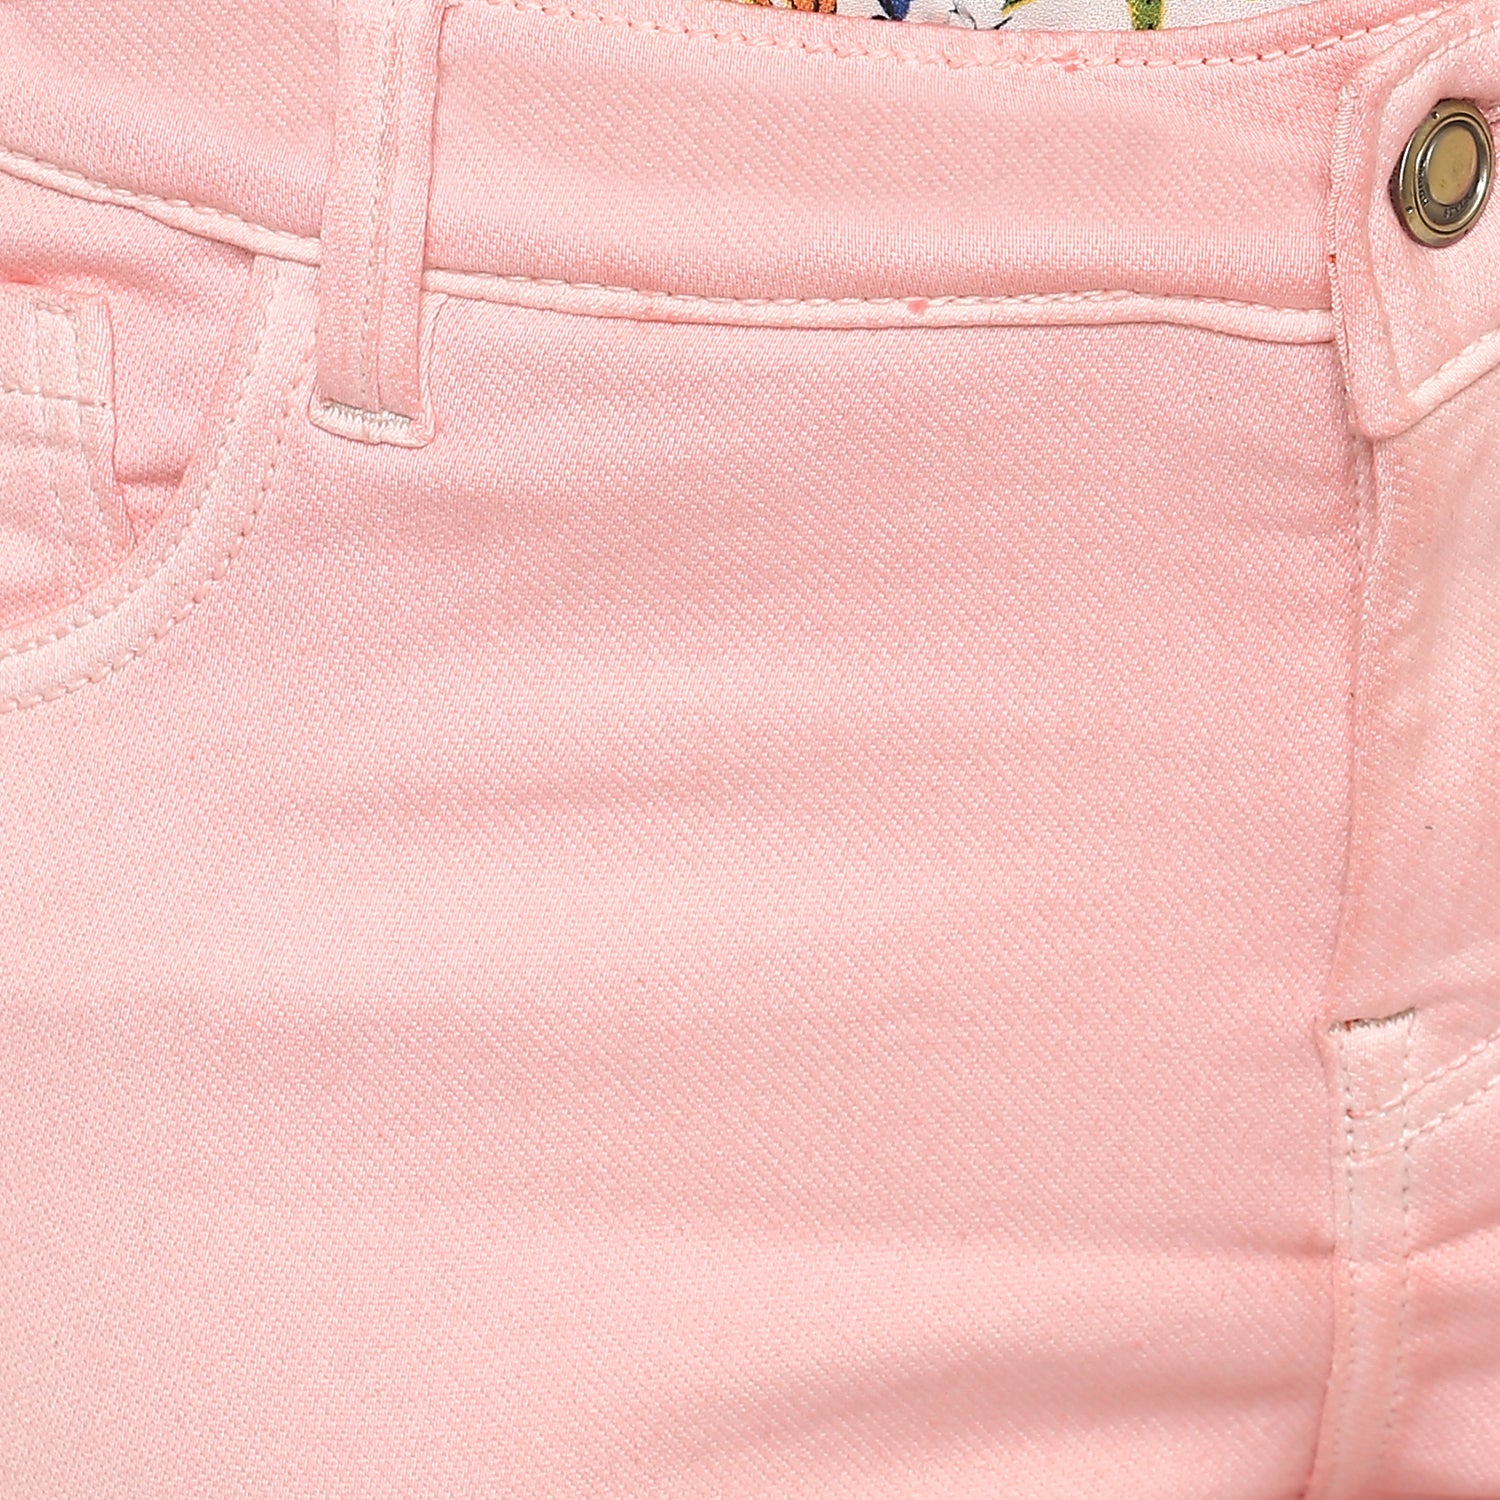 Women's Light Pink Lycra Denim Jeans - StyleStone